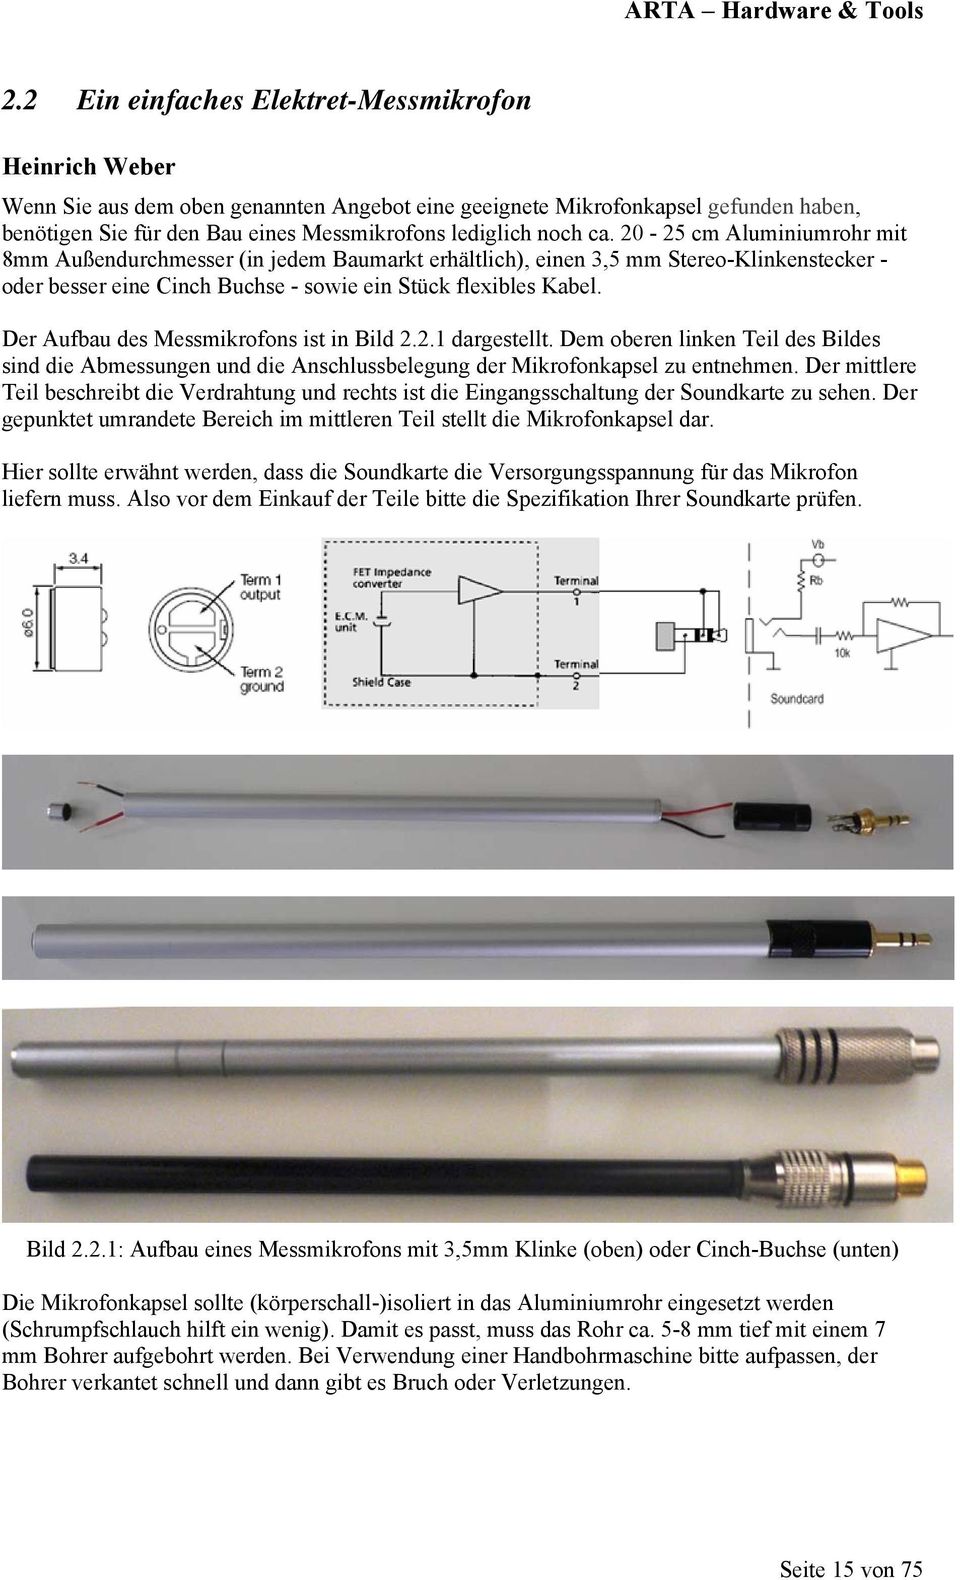 Der Aufbau des Messmikrofons ist in Bild 2.2.1 dargestellt. Dem oberen linken Teil des Bildes sind die Abmessungen und die Anschlussbelegung der Mikrofonkapsel zu entnehmen.